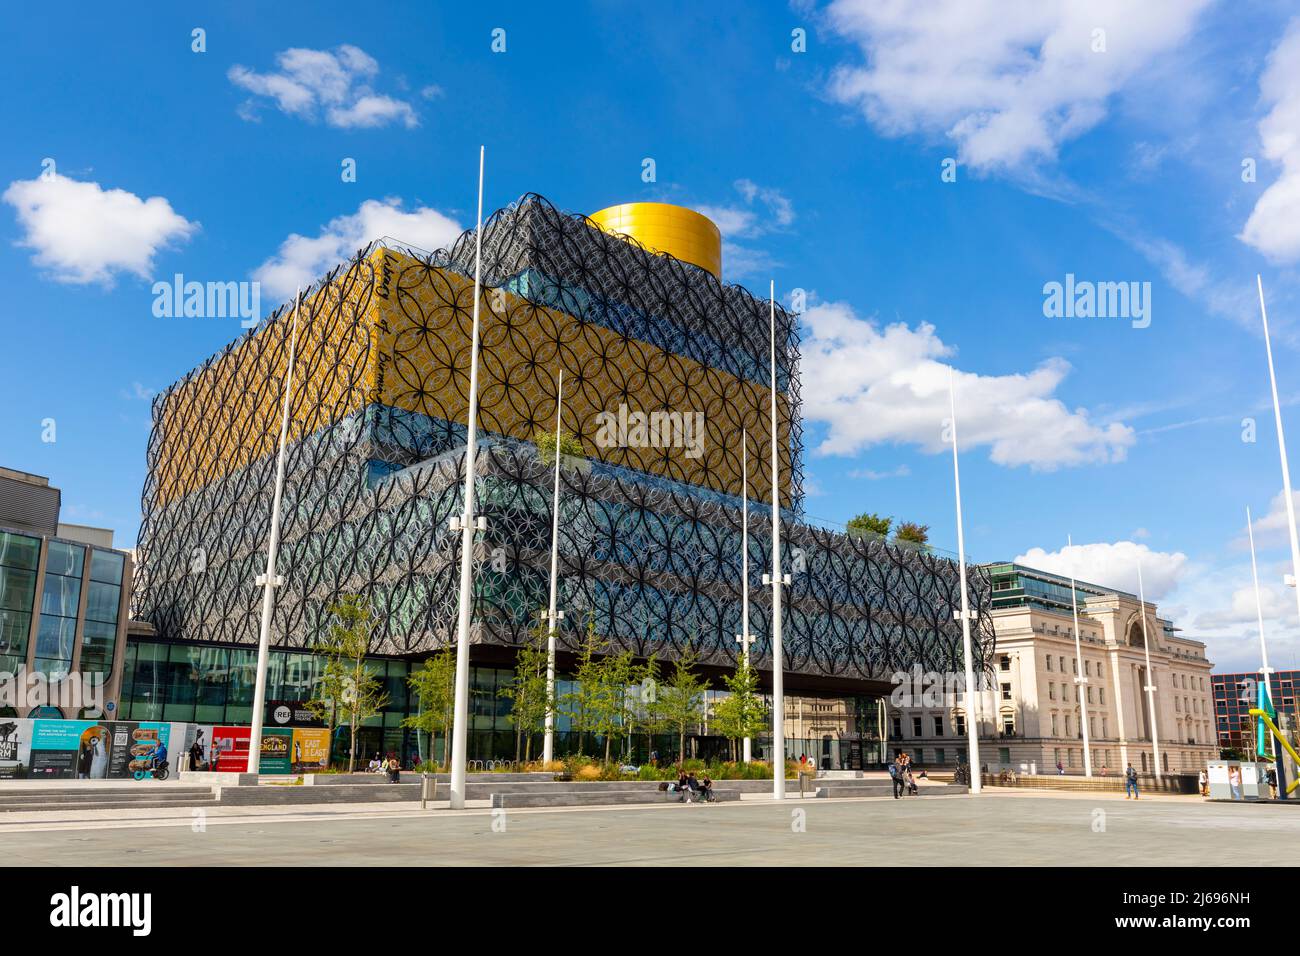 Bibliothek von Birmingham, Baskerville House, Centenary Square, Birmingham, West Midlands, England, Vereinigtes Königreich, Europa Stockfoto